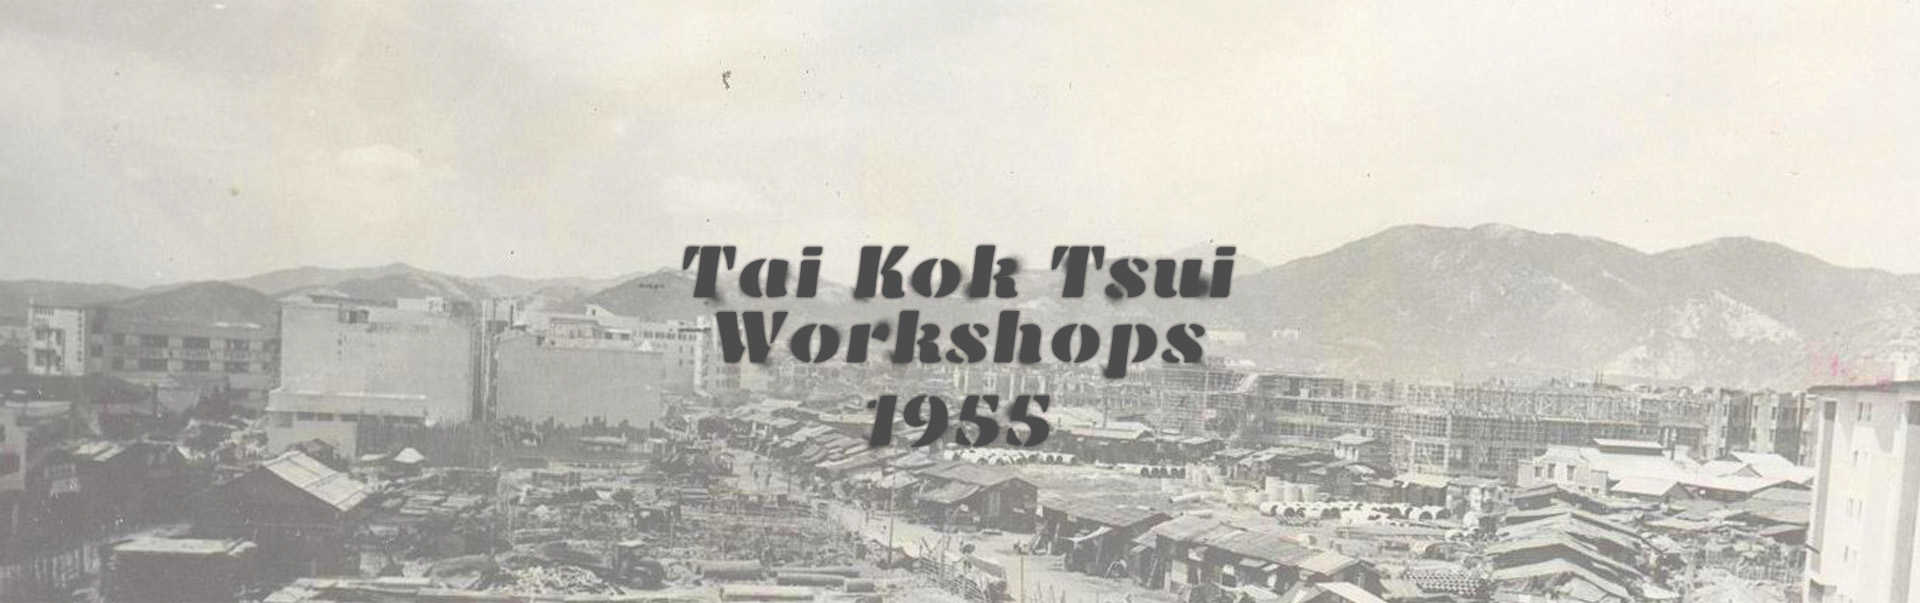 Tai Kok Tsui Workshops, 1955